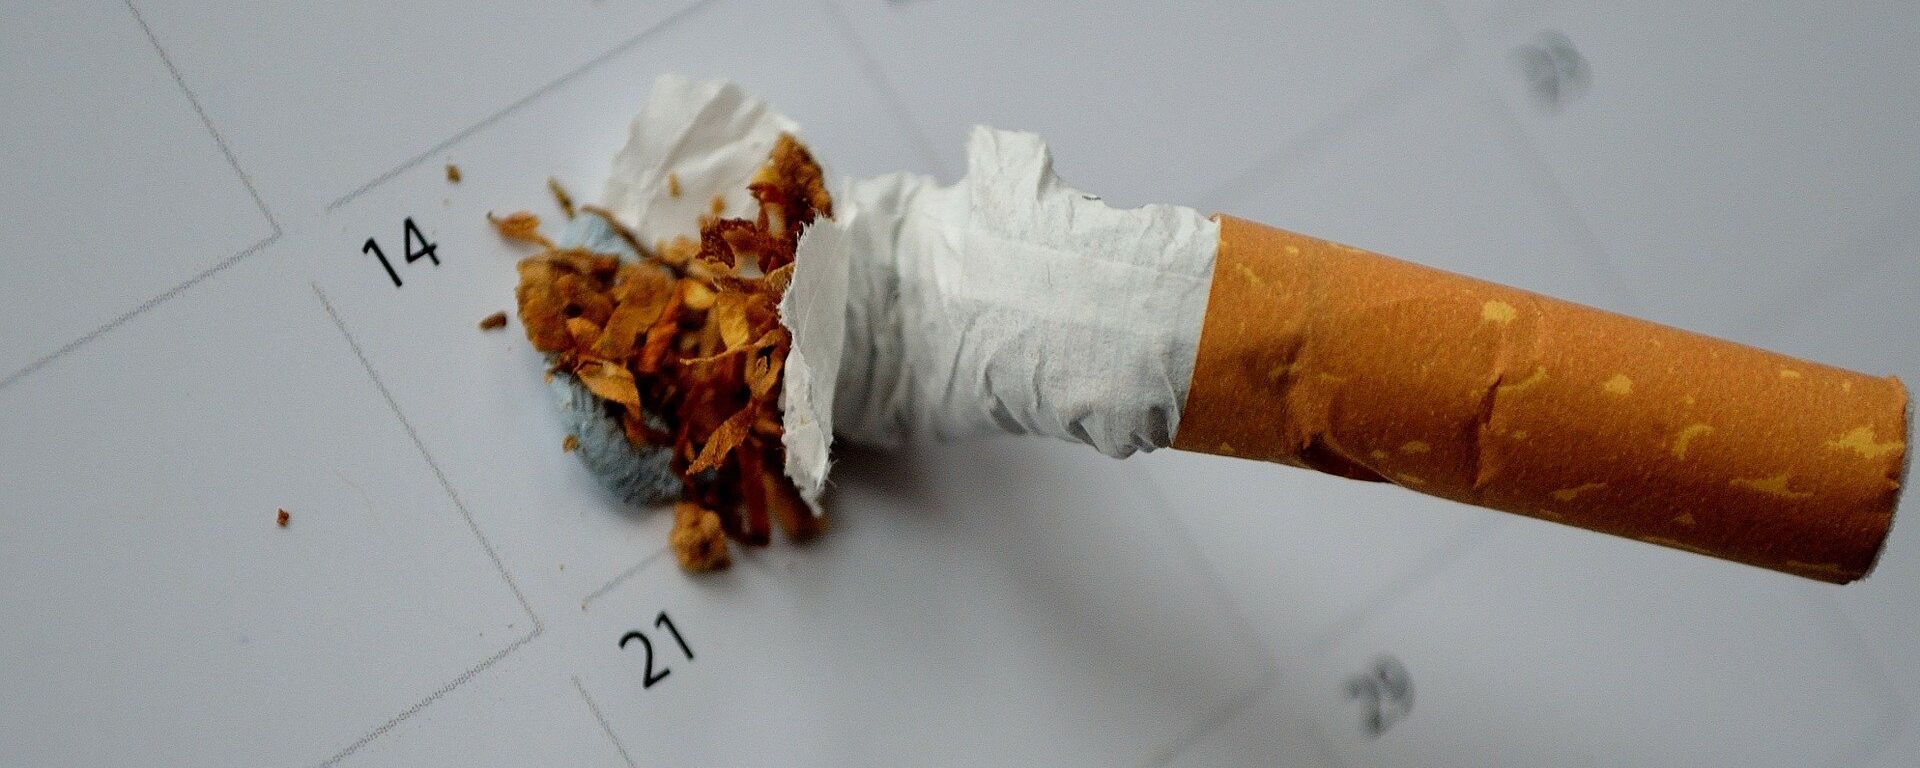 Сломанная сигарета - Sputnik Беларусь, 1920, 31.05.2017